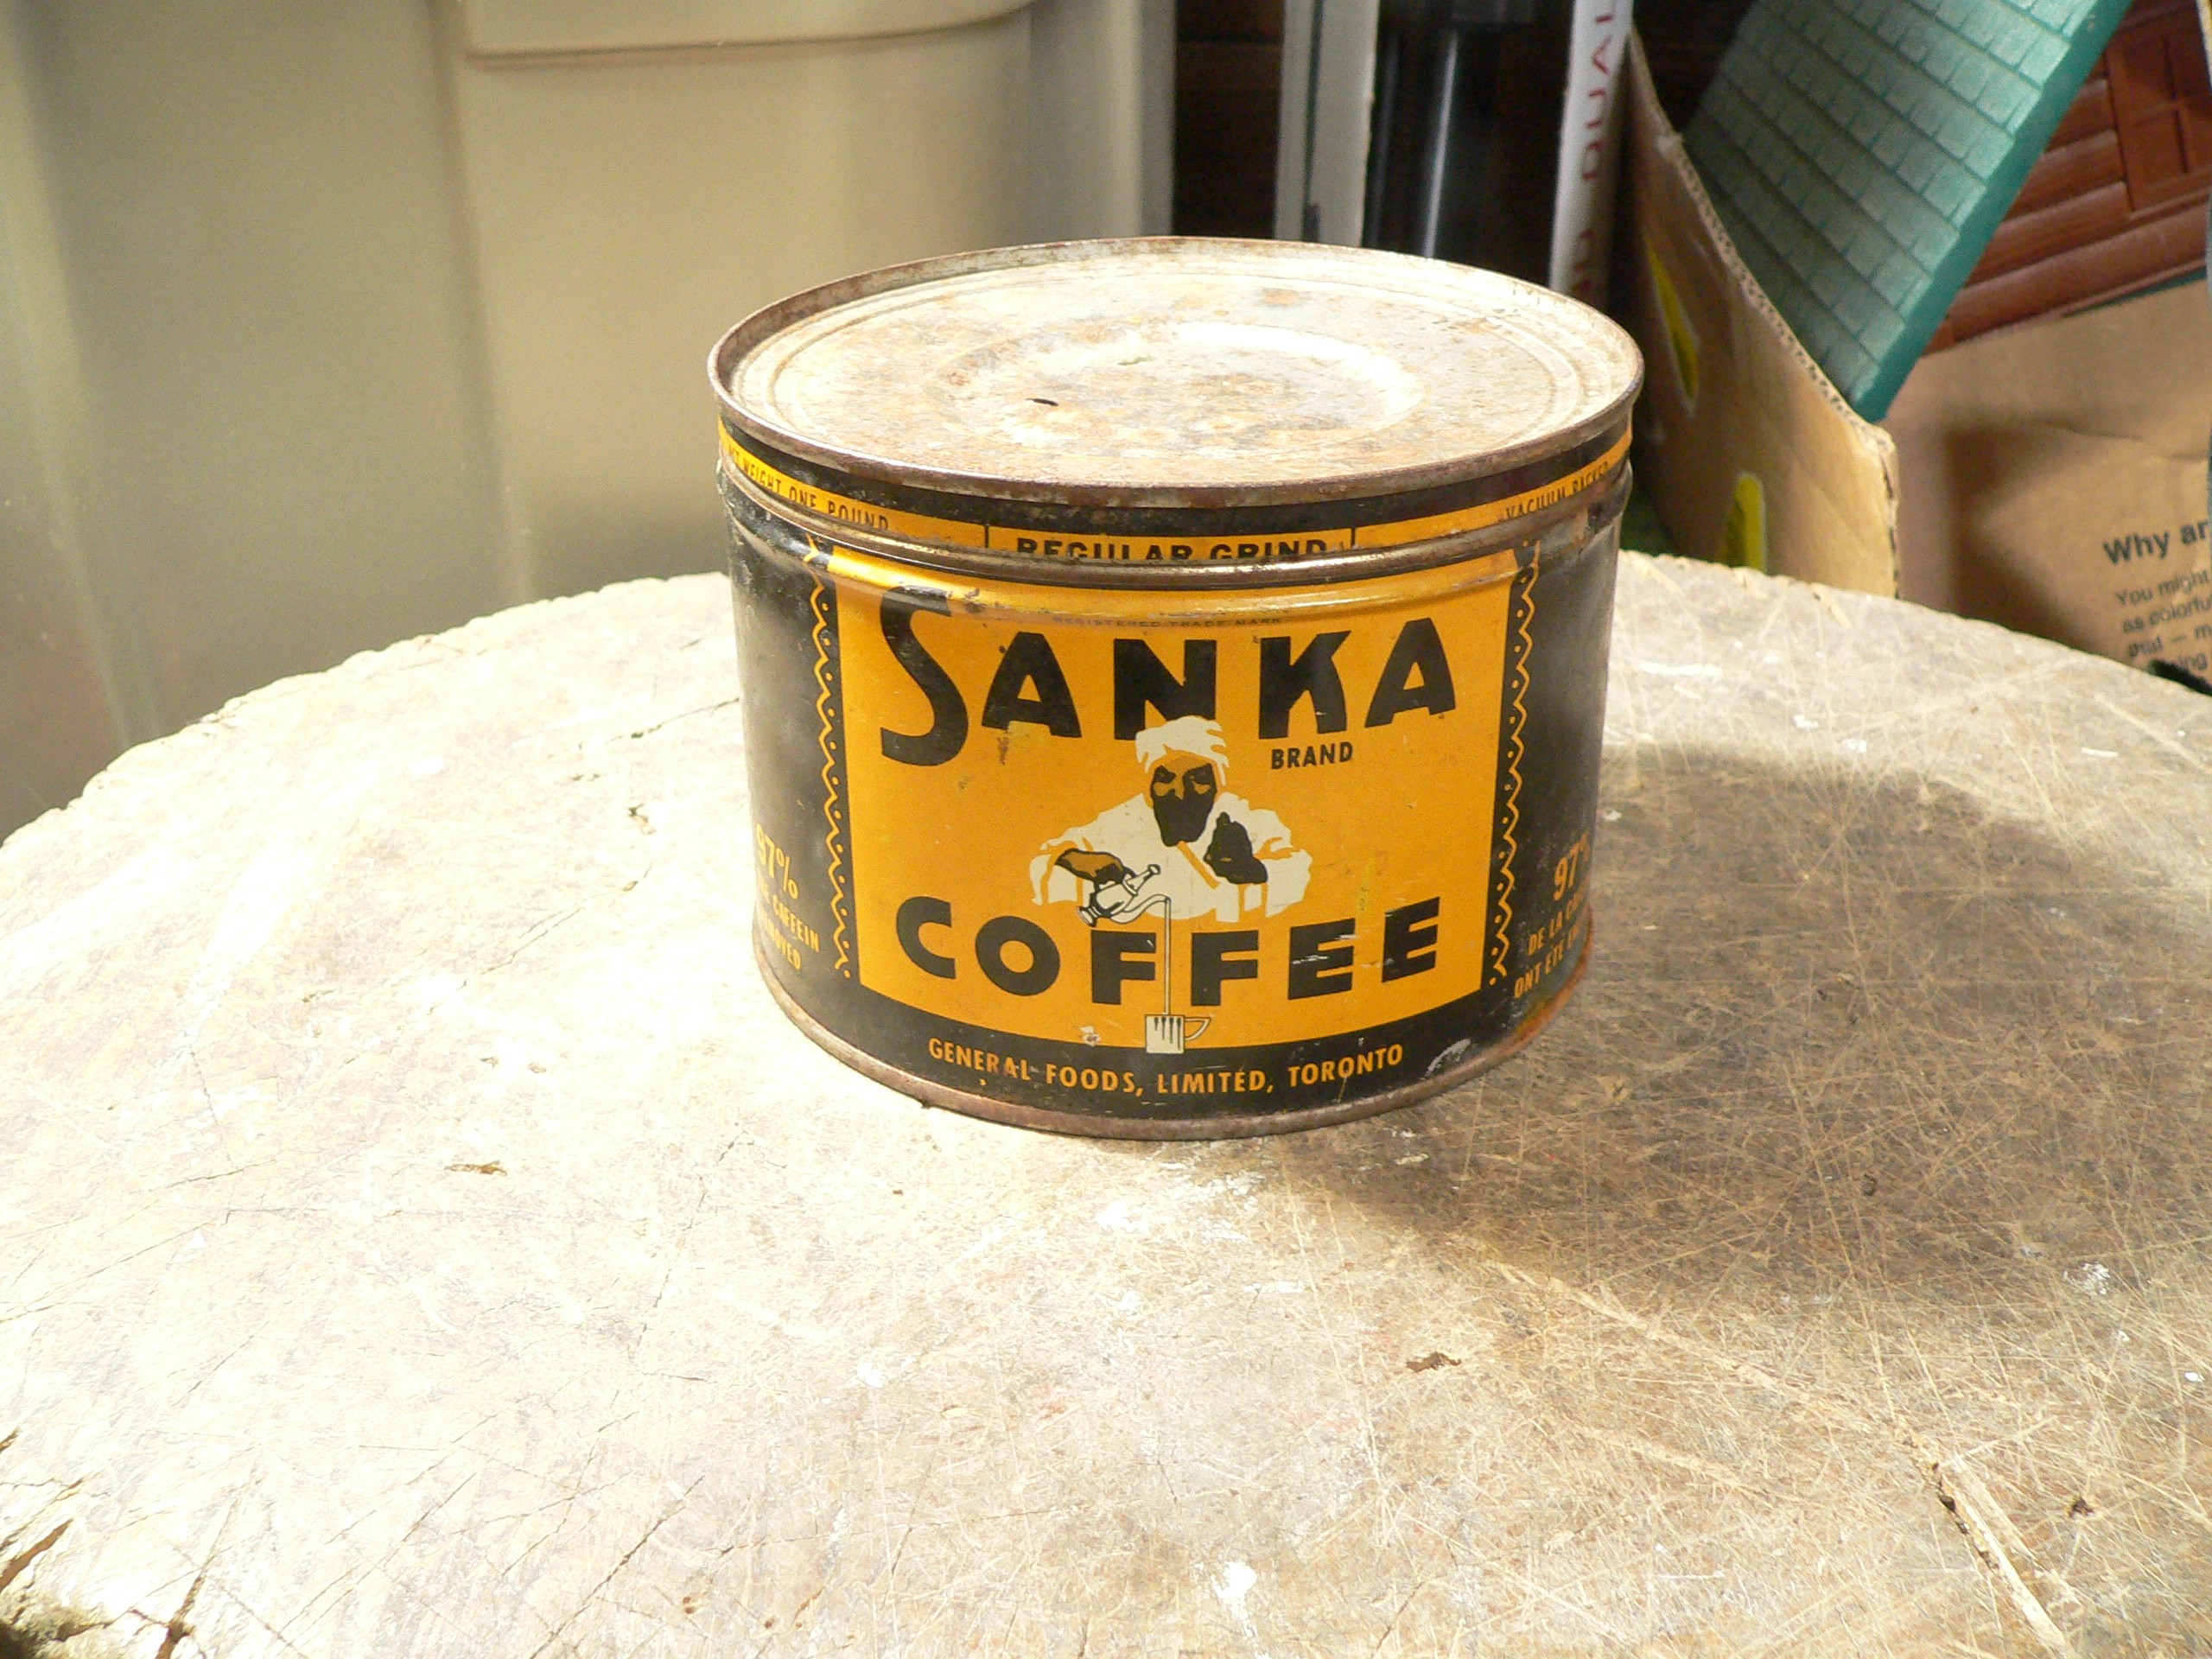 Canne de café sanka # 9580 